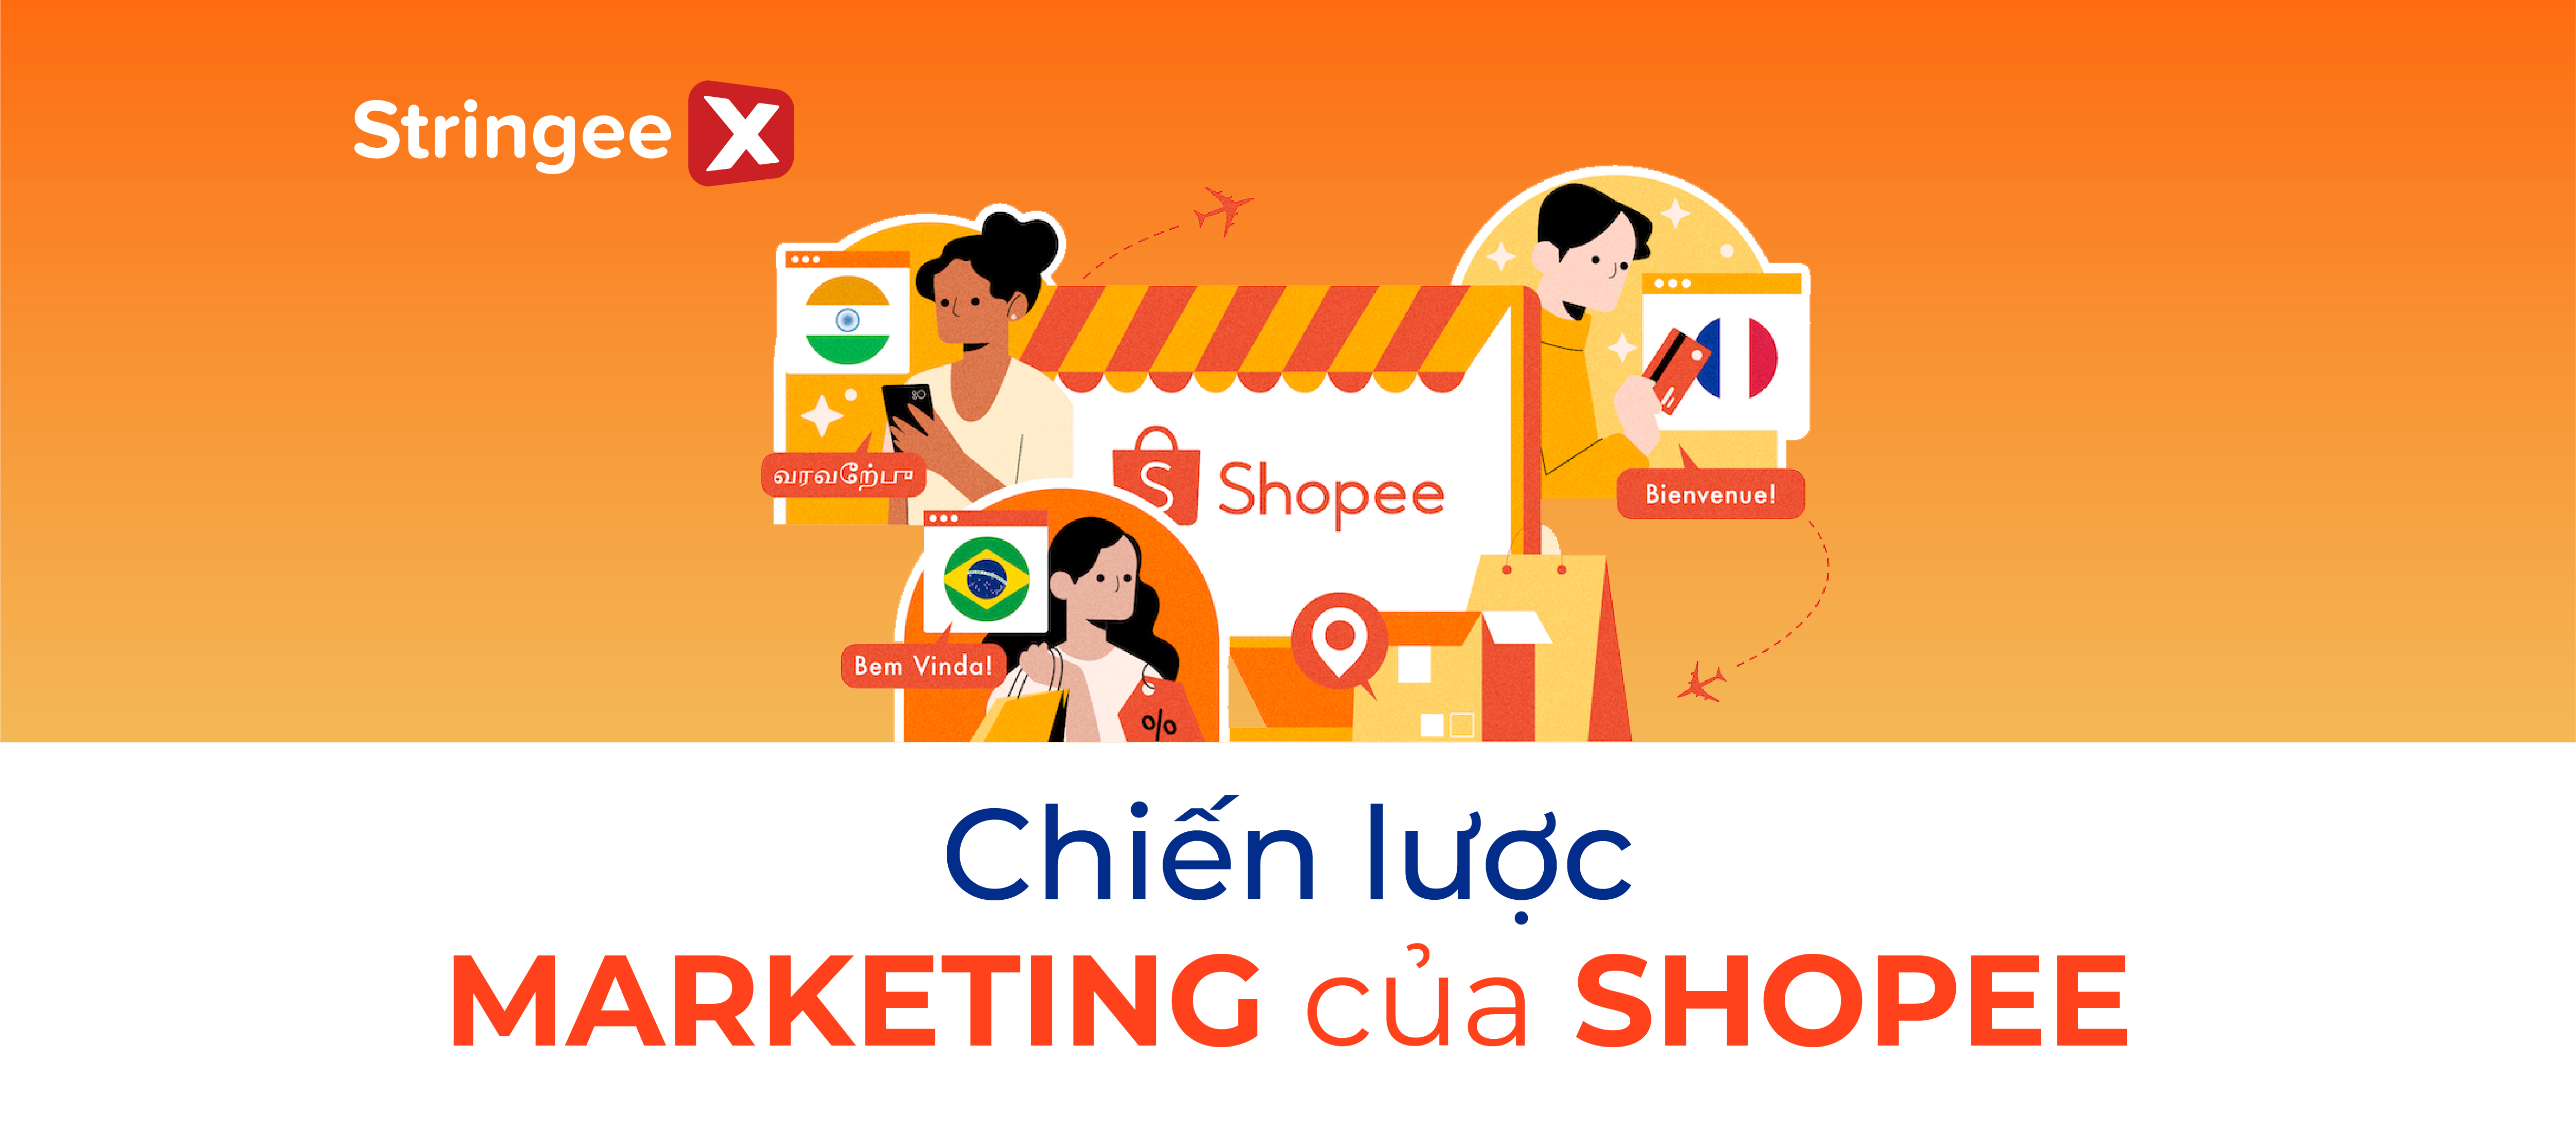 Chiến lược Marketing của Shopee - Bí quyết thống trị thị trường Việt Nam